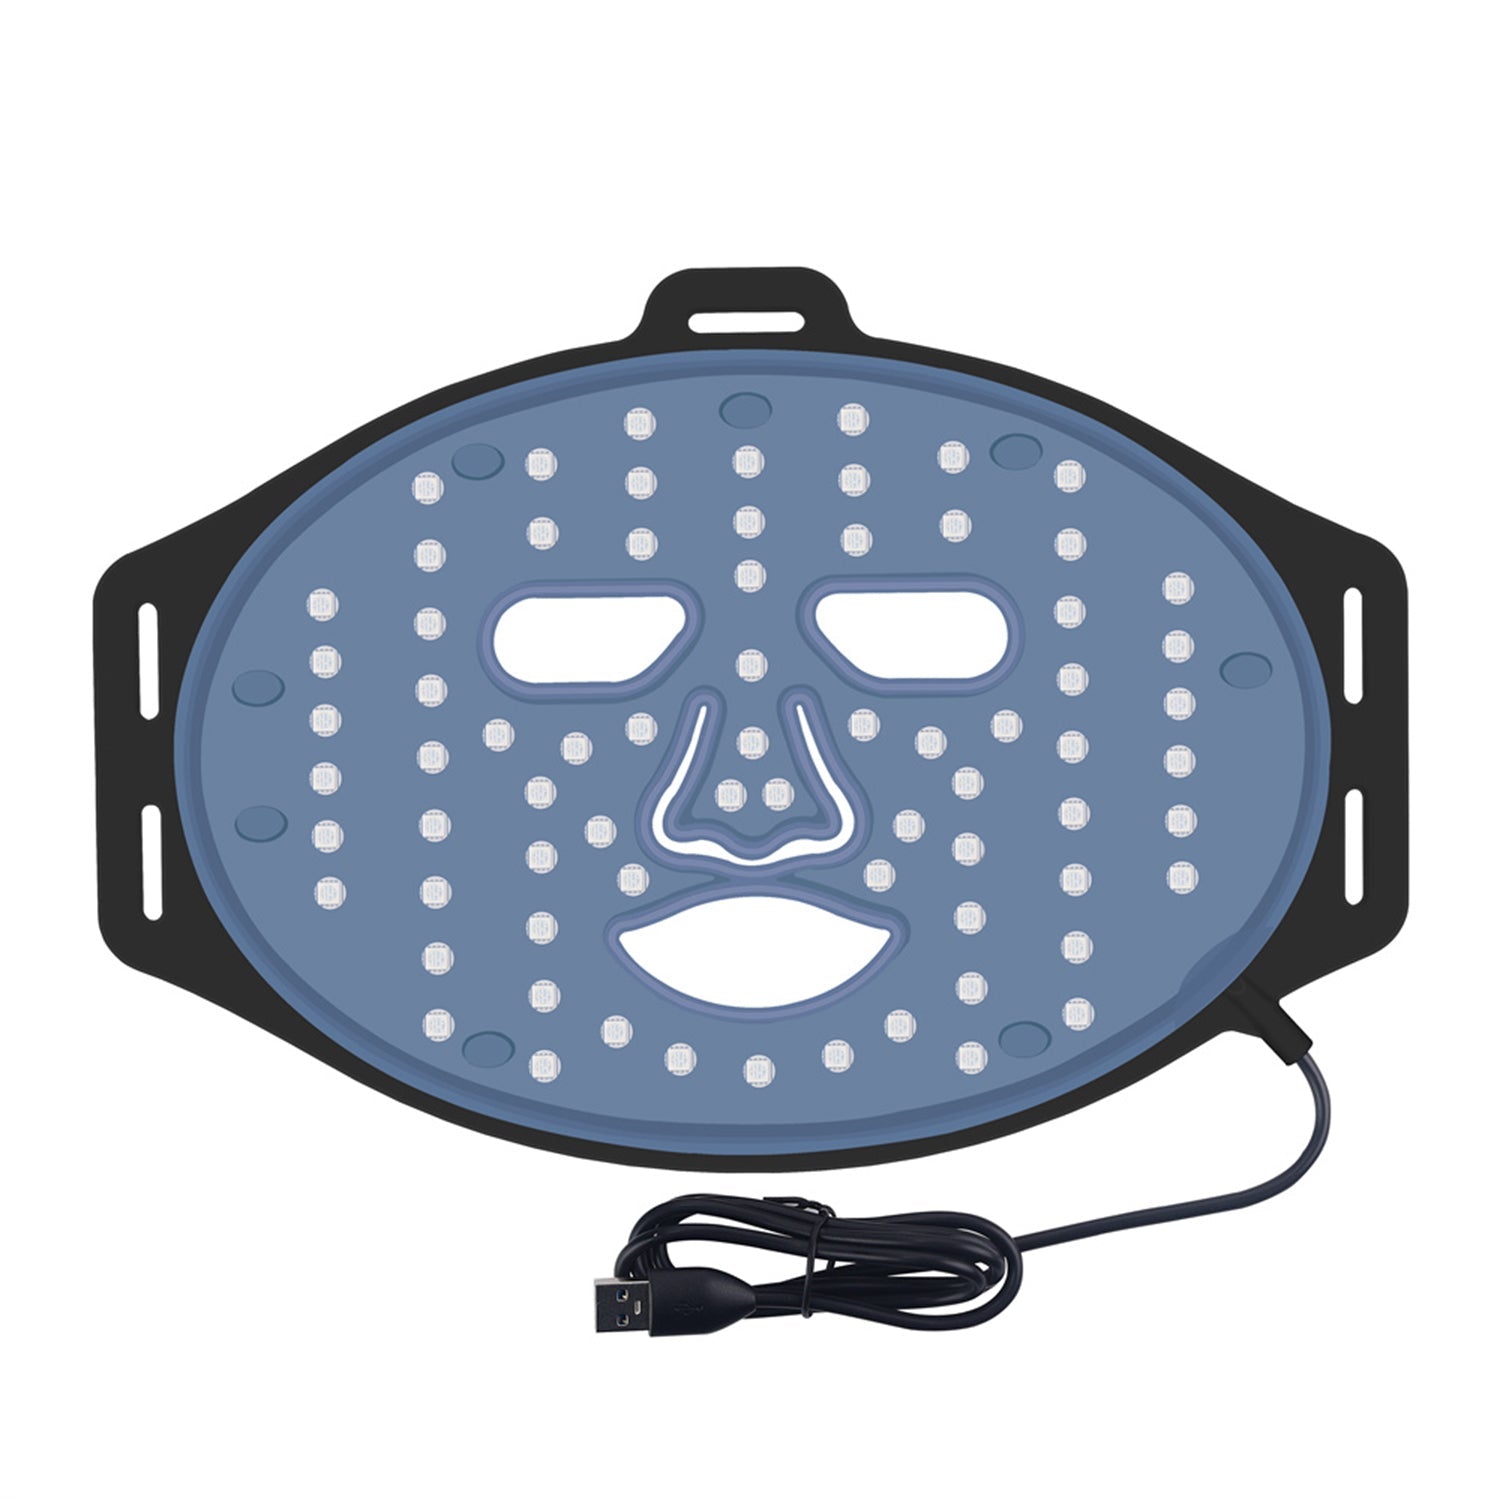 Liroma LED-gezichtsmasker - Liroma